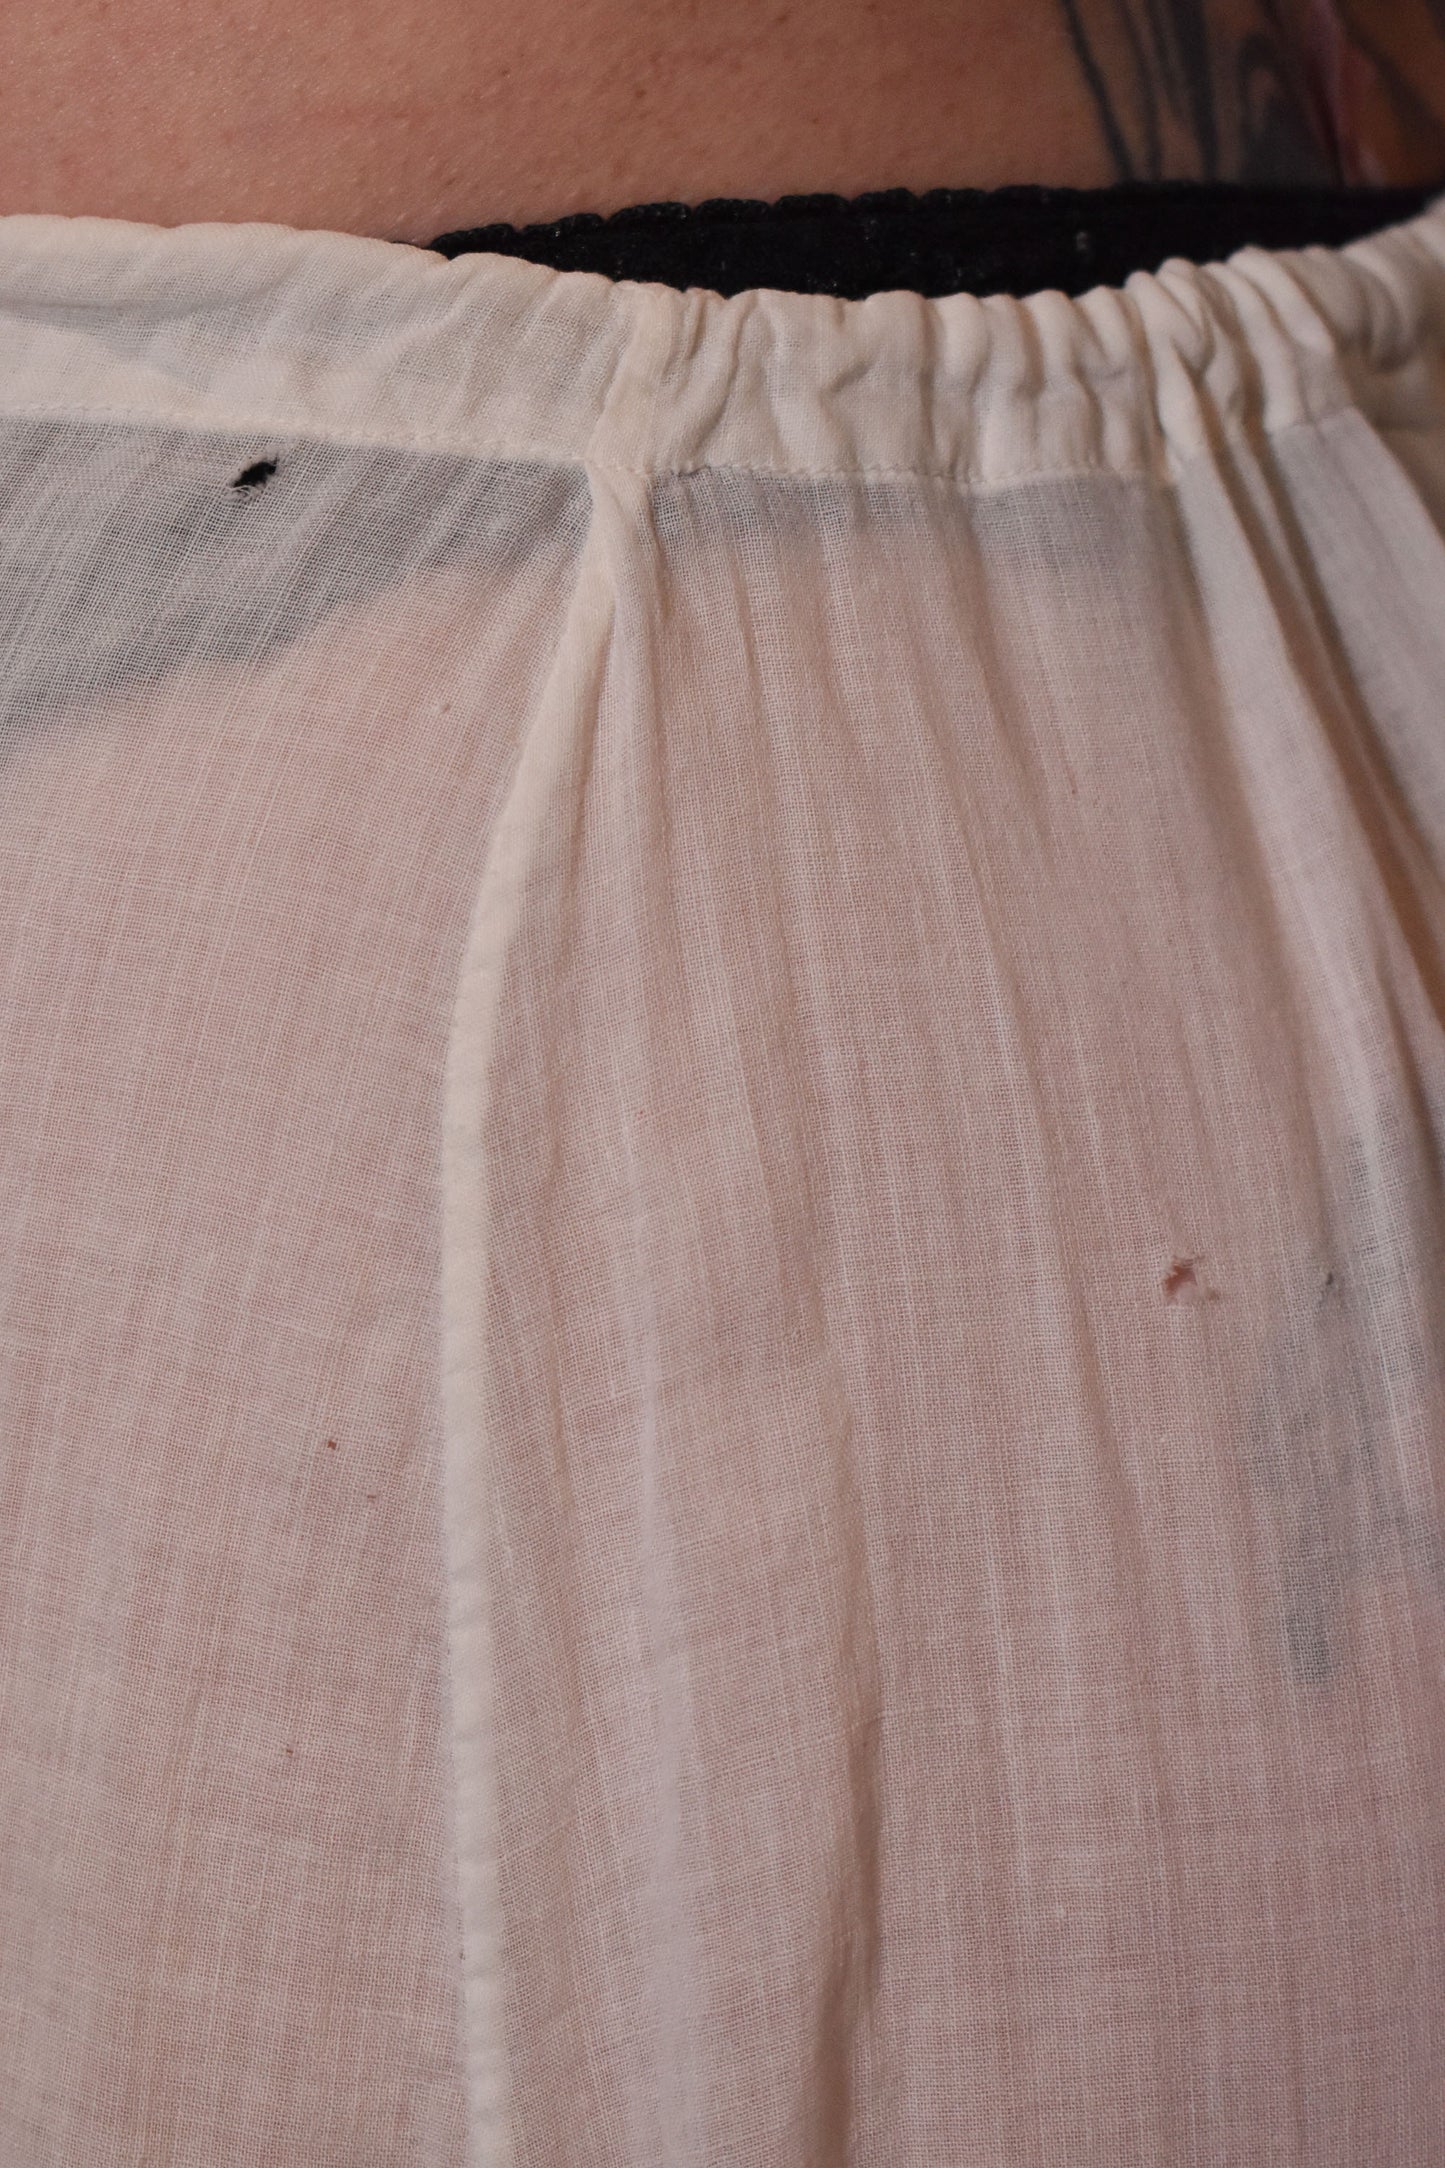 Antique Cotton Lace Trim Skirt